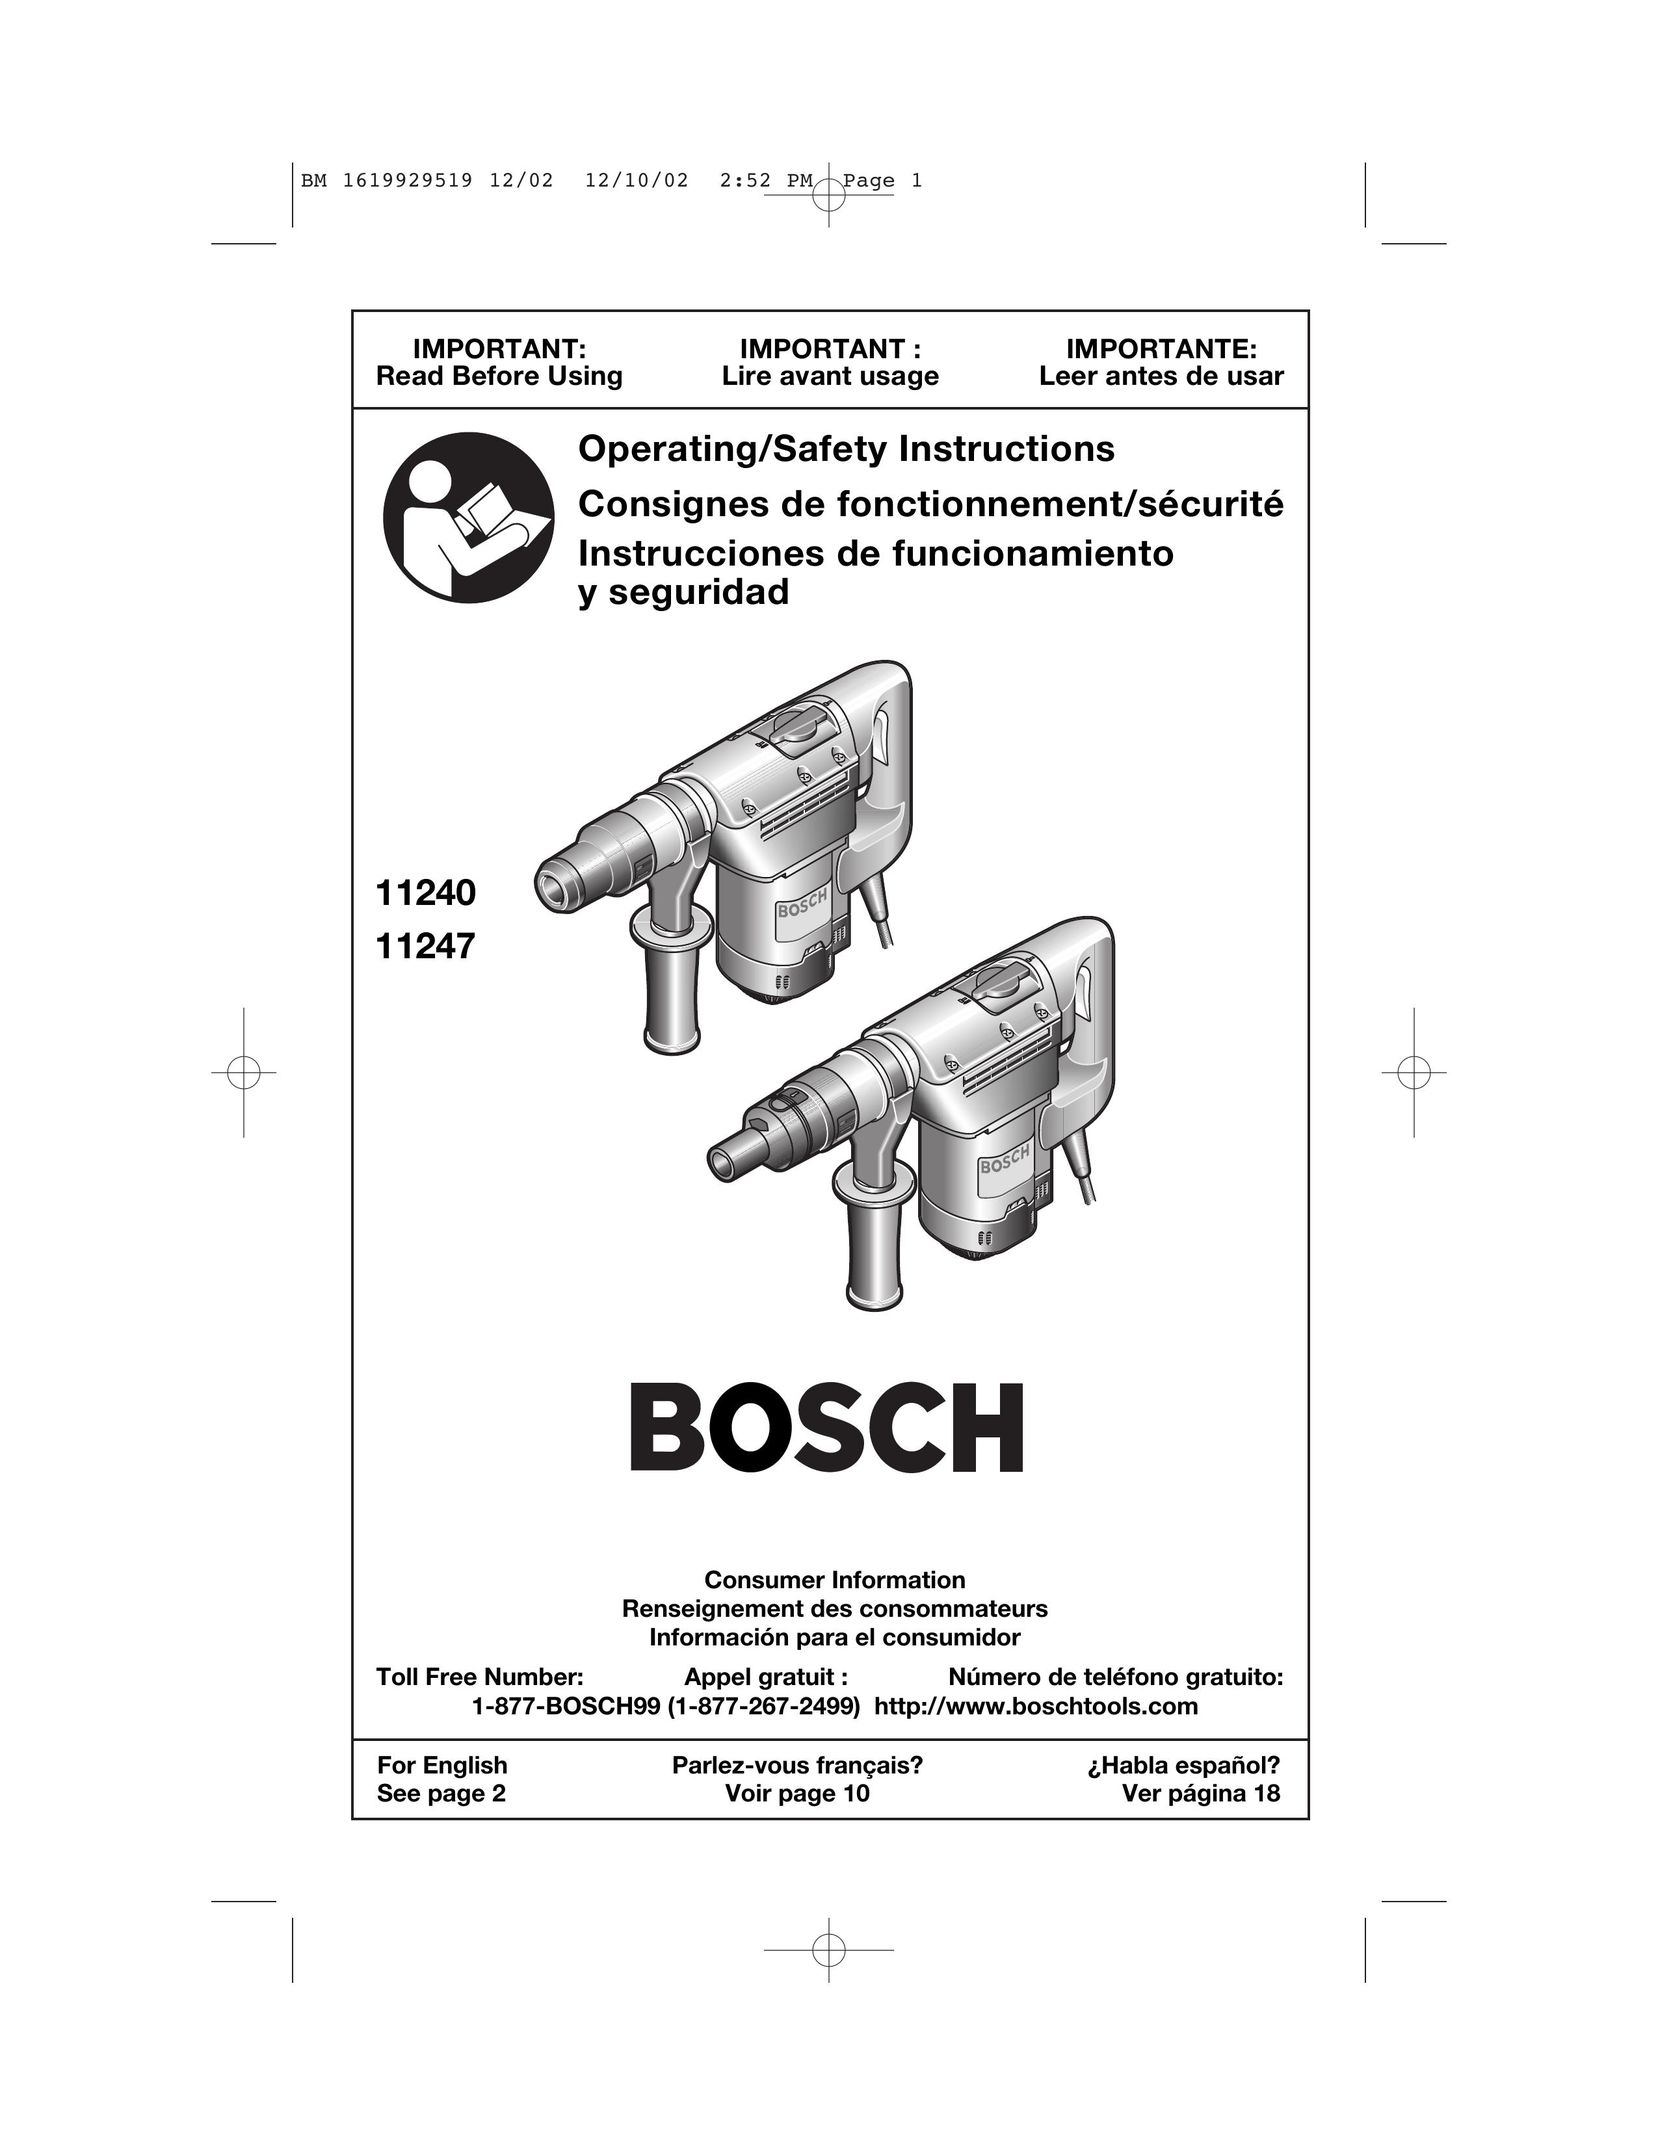 Bosch Power Tools 11247 Power Hammer User Manual